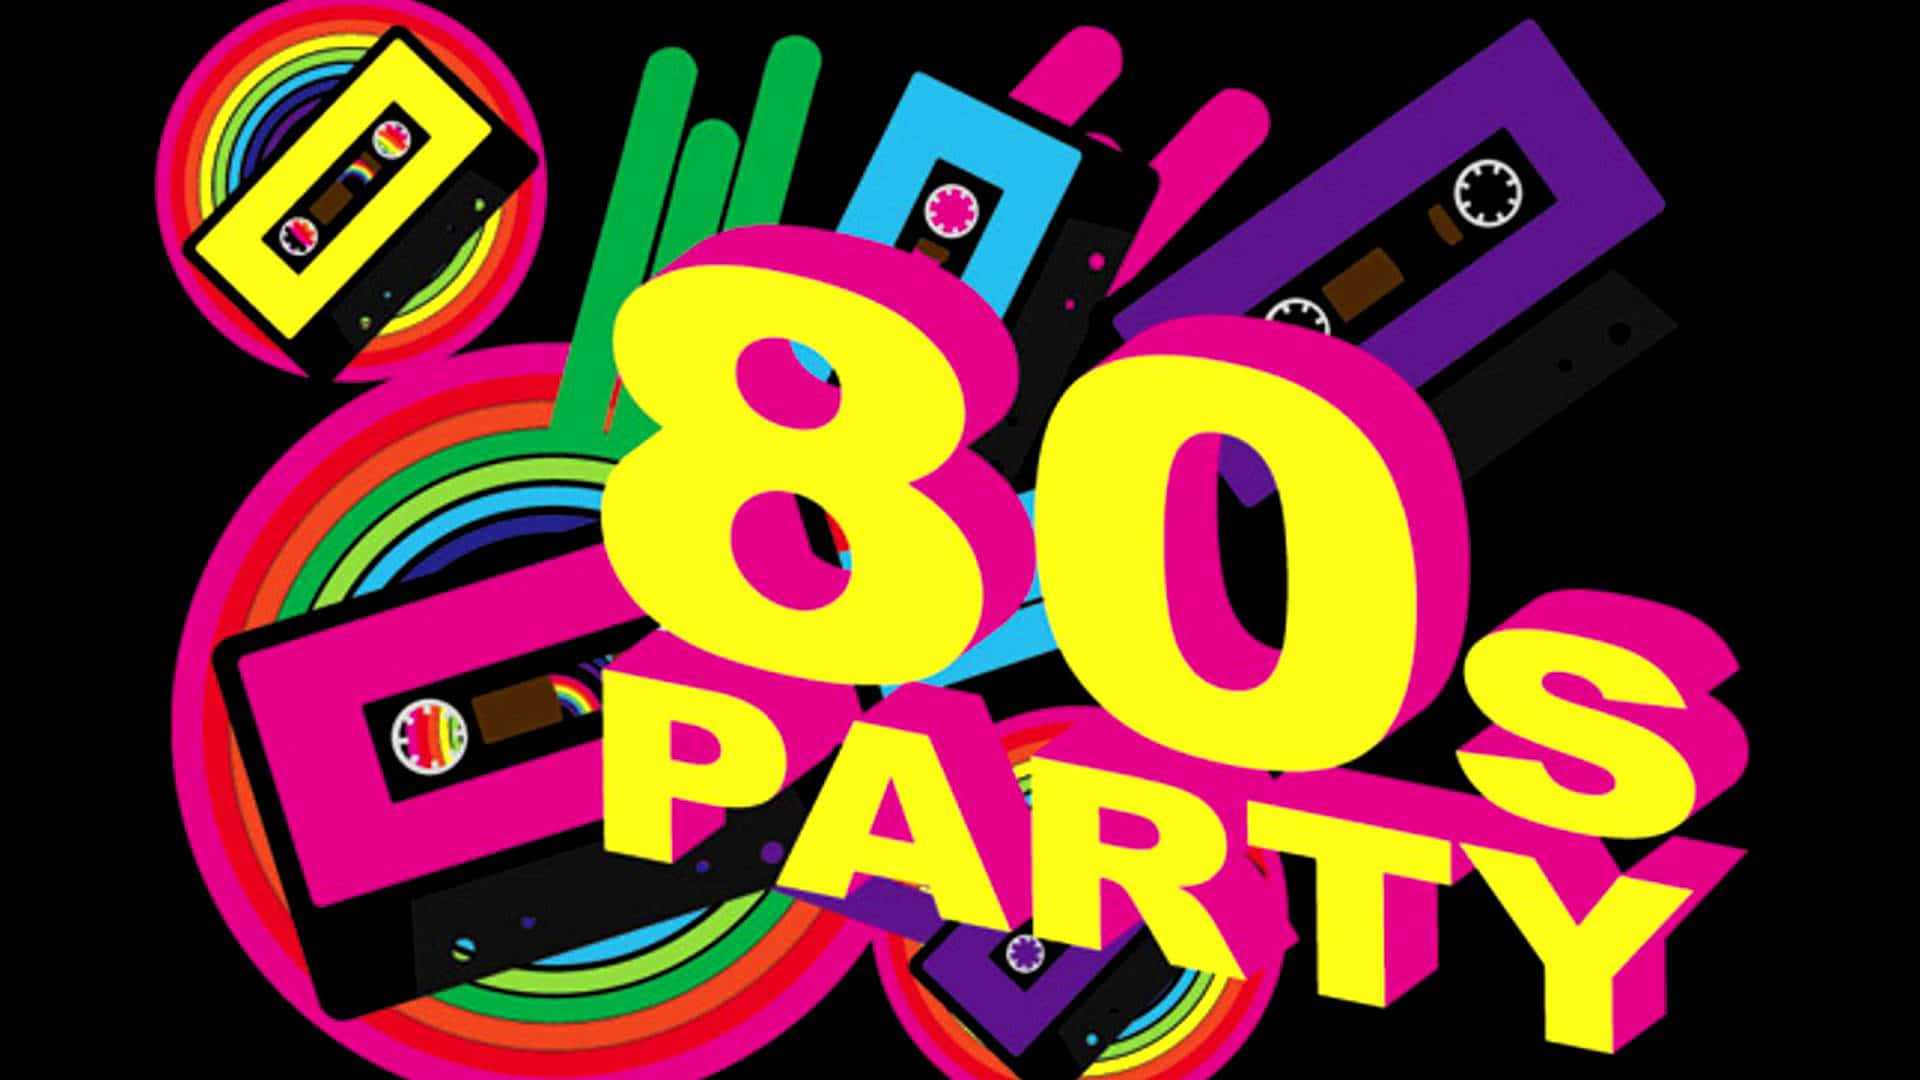 Вечеринки 80 90х. Стиль 80х. Приглашение на вечеринку в стиле 80-х. Пригласительные на вечеринку 80-х. Вечеринка в стиле 80-х.